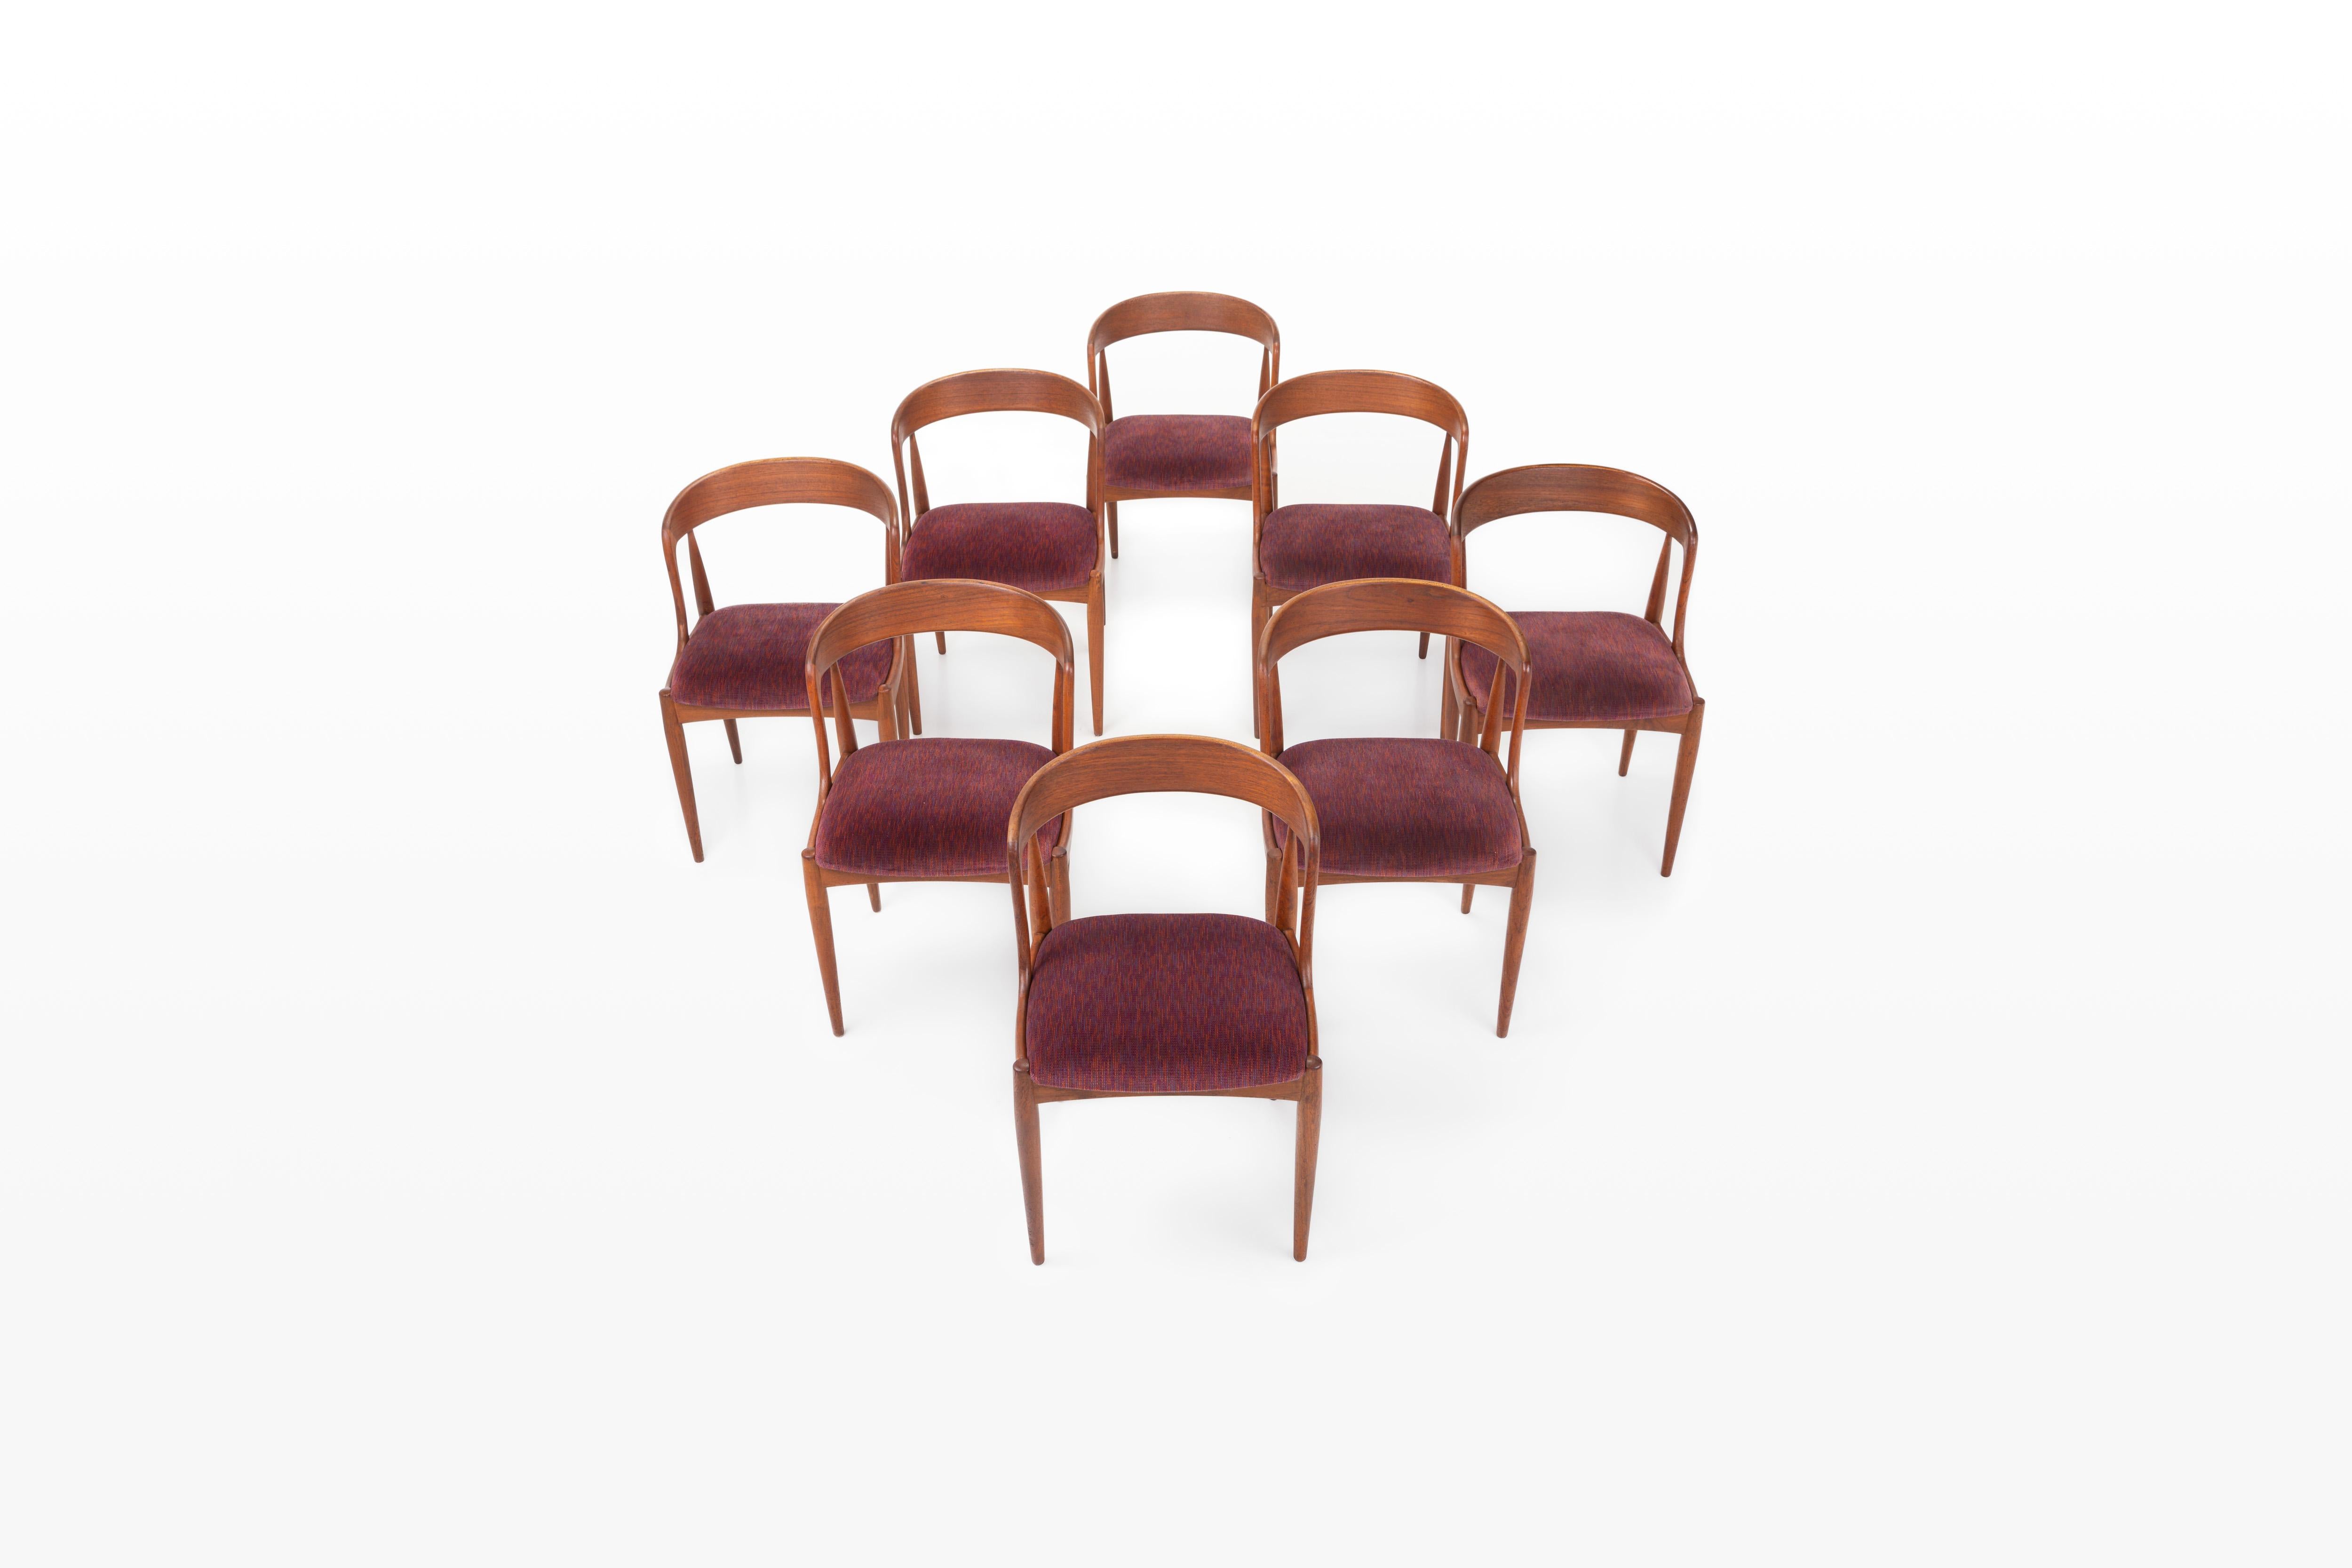 Satz mit acht Stühlen für das Esszimmer im Vintage-Stil. Diese Stühle wurden von Johannes Andersen für die Uldum Møbelfabrik in Dänemark entworfen. Sie haben einen Rahmen aus Teakholz und eine rot-violette Sitzfläche. Die Stühle sind in sehr gutem